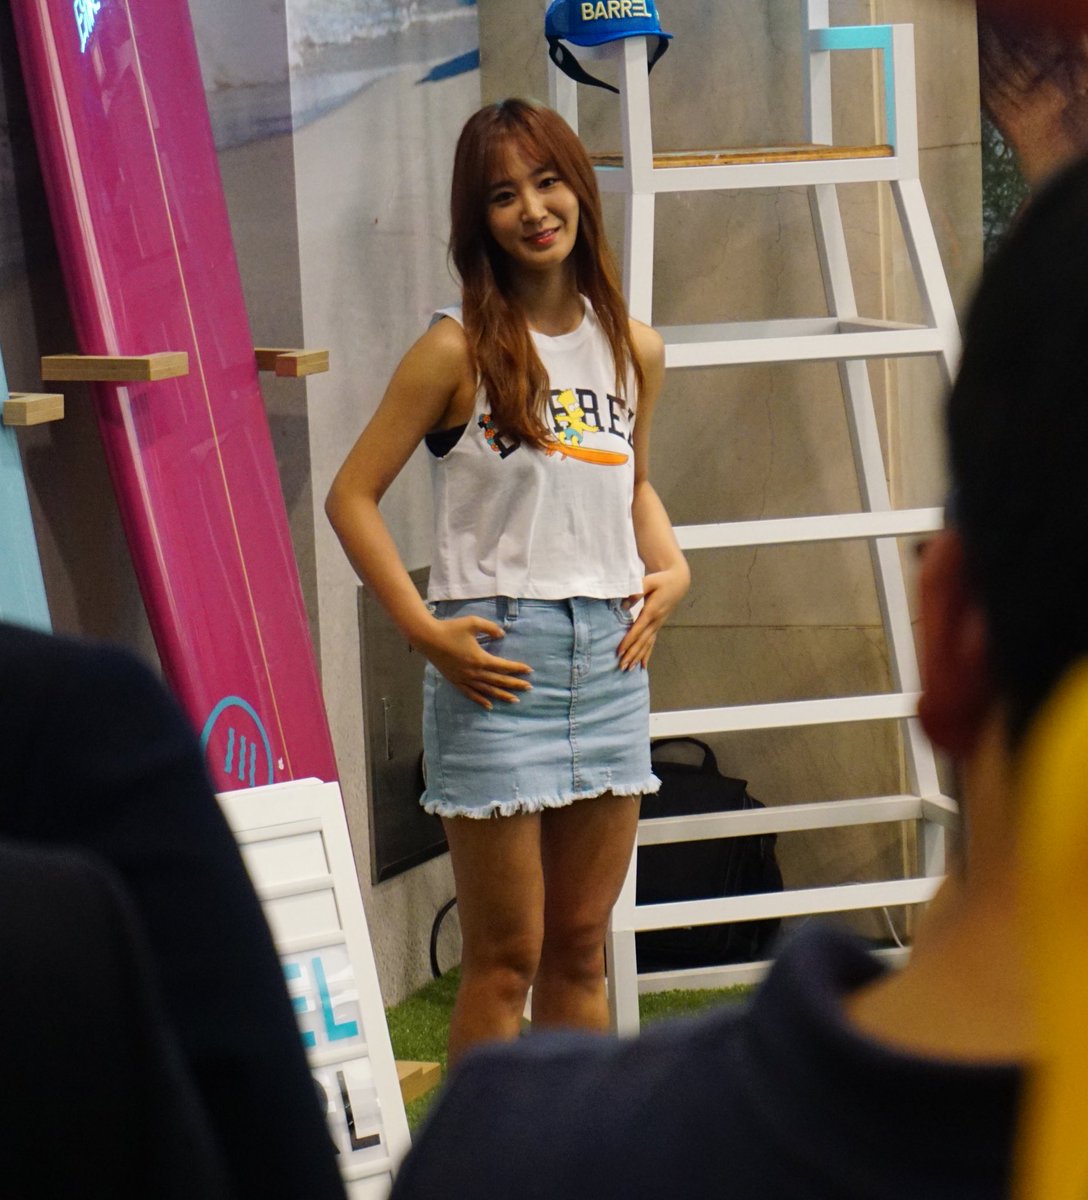 [PIC][29-07-2016]Yuri tham dự buổi Fansign cho thương hiệu “BARREL” vào chiều nay Coh8w_gVUAA_uiQ